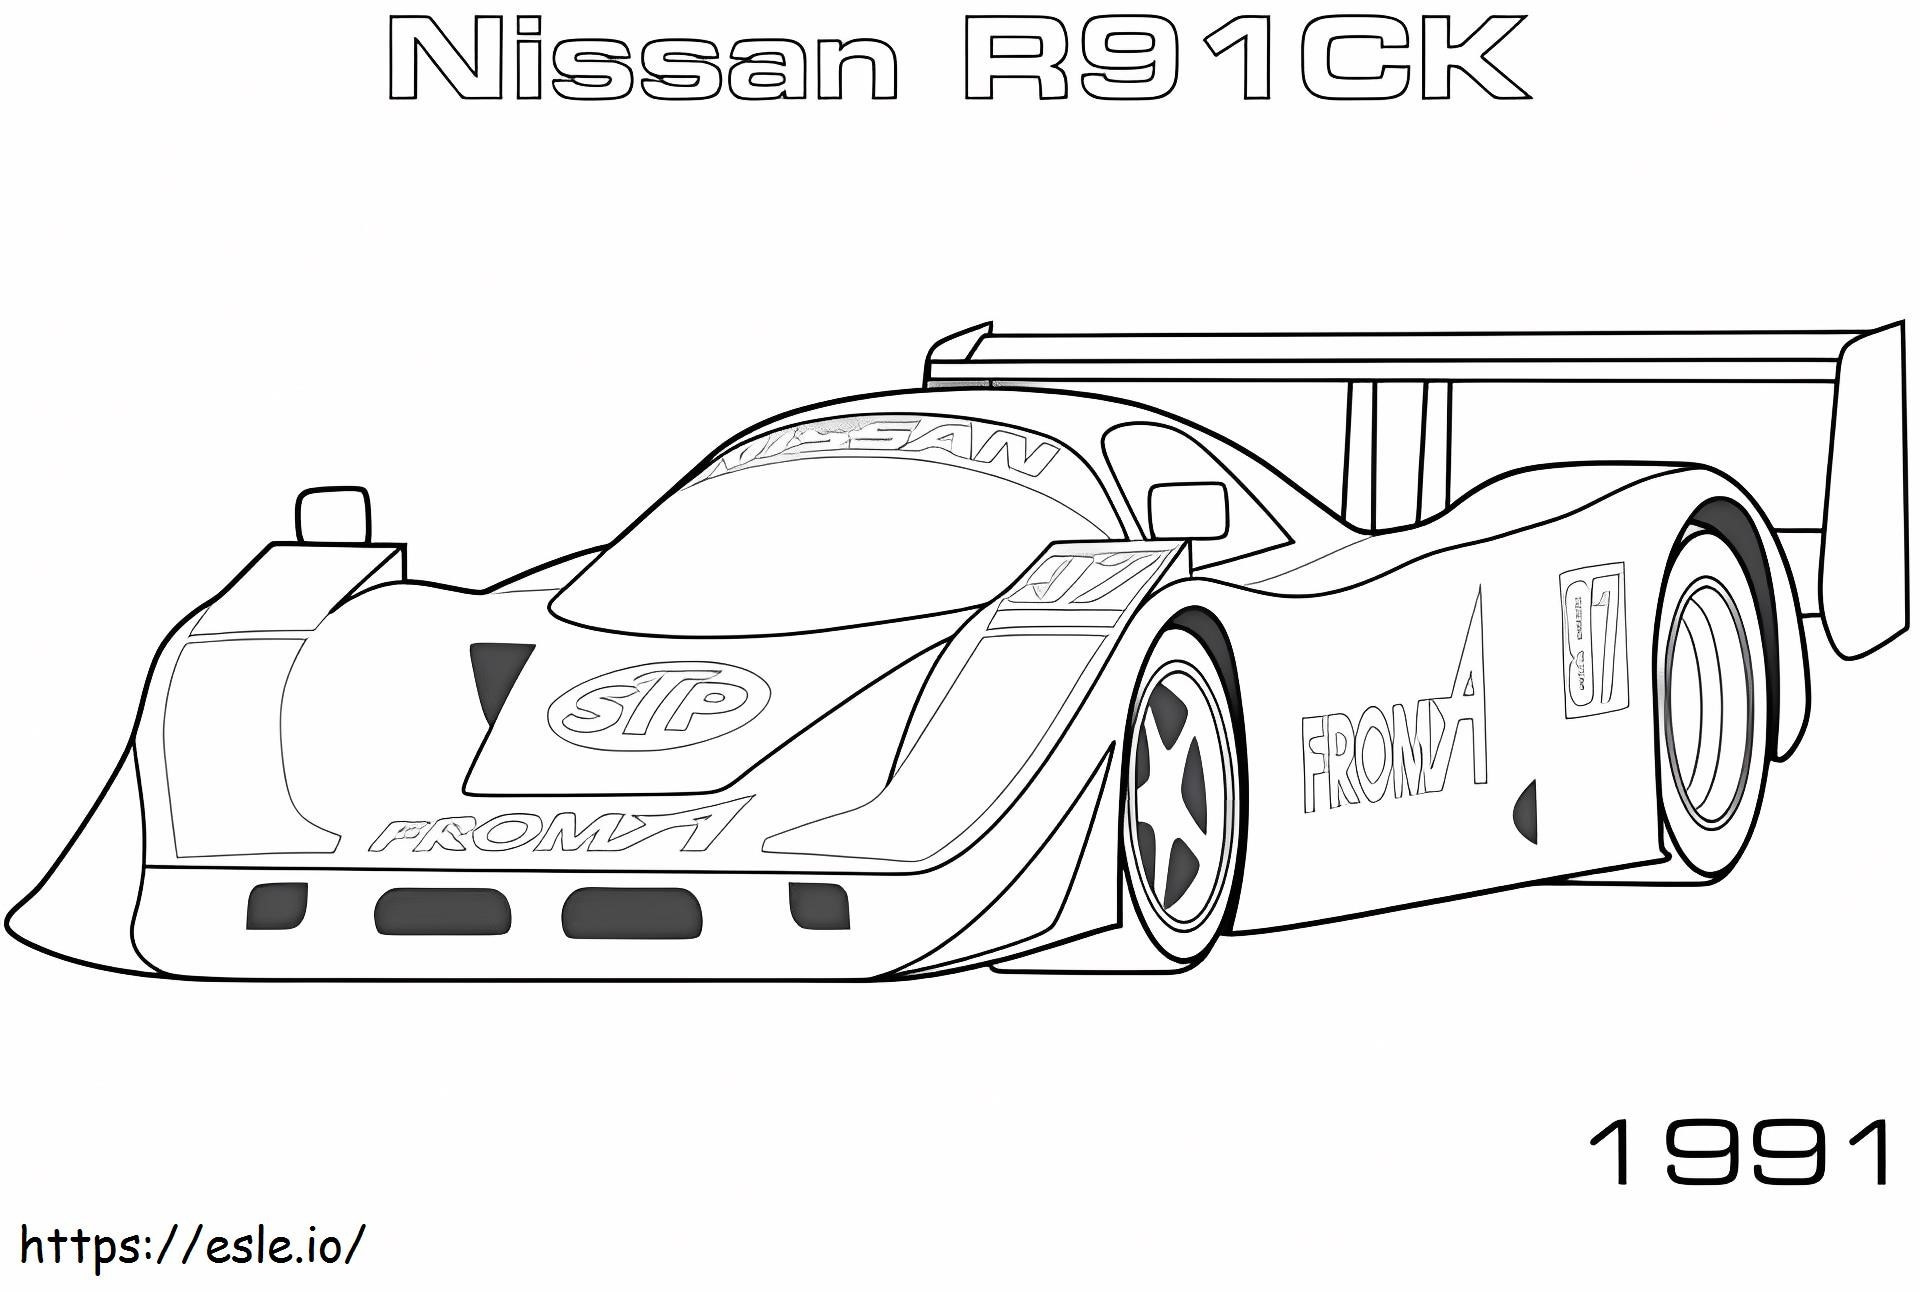 Nissan R91Ck kifestő